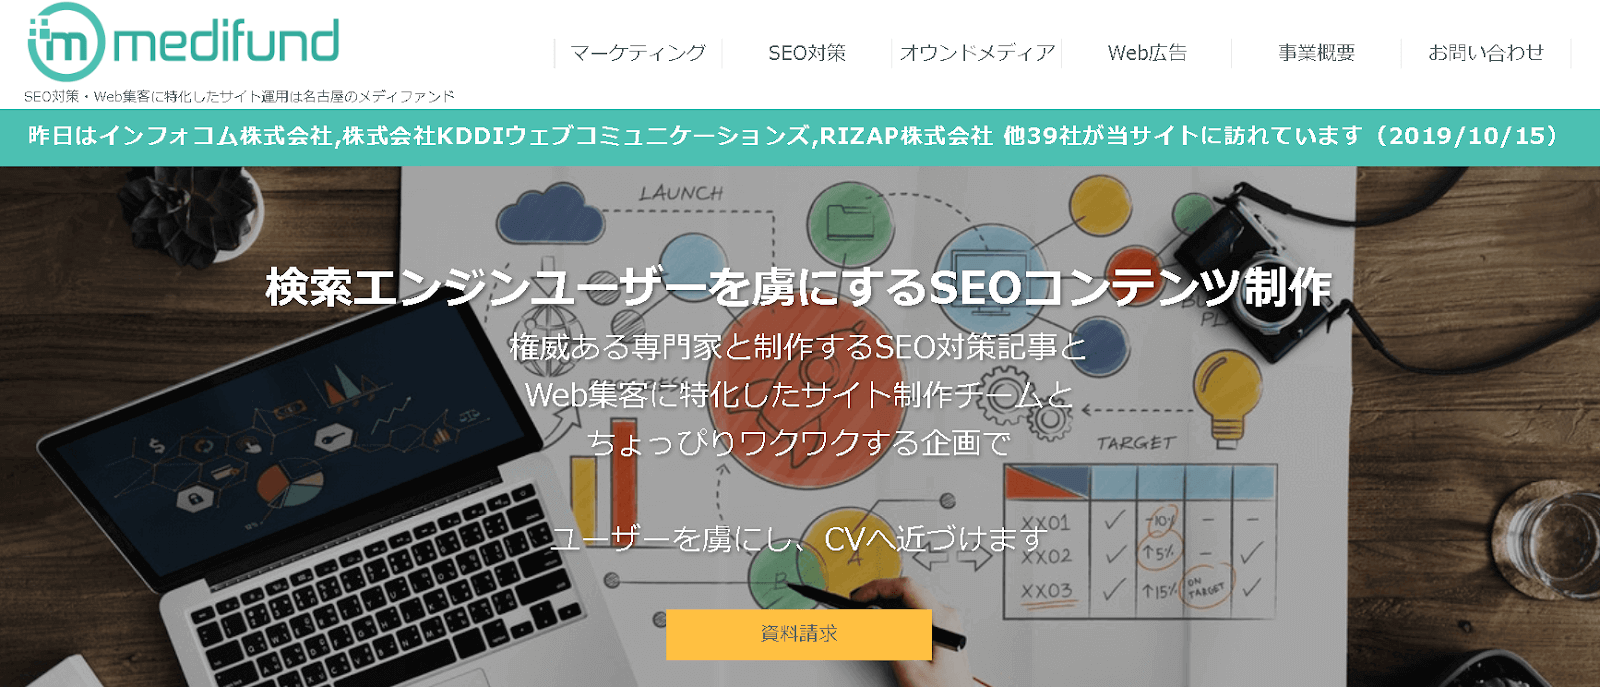 SEO対策・Web集客に特化したサイト運用は名古屋のメディファンド